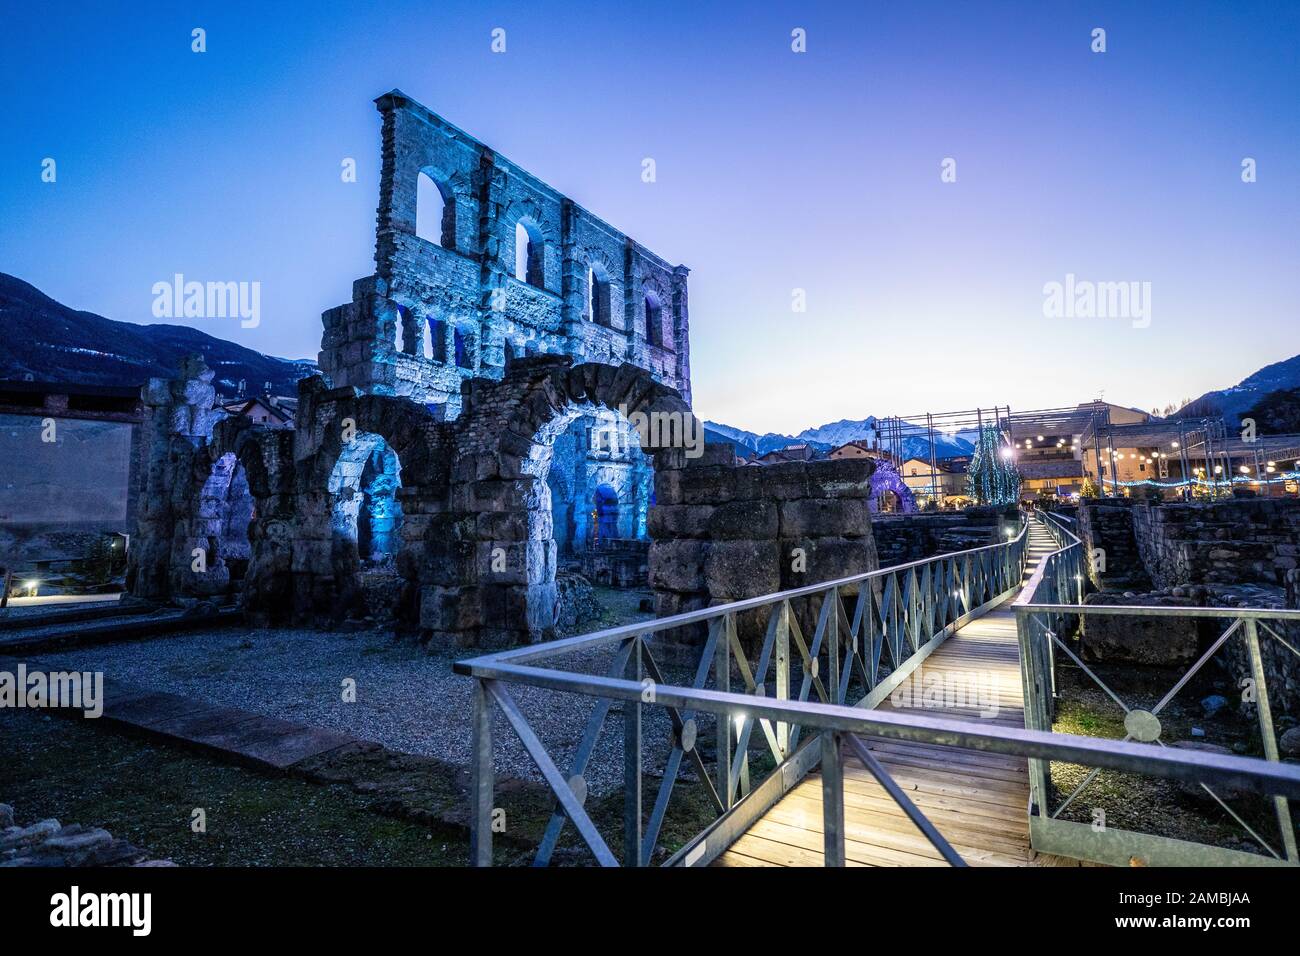 Les ruines du théâtre romain d'Aoste ont été illuminées la nuit pendant les marchés de Noël. Vallée D'Aoste, Italie Banque D'Images